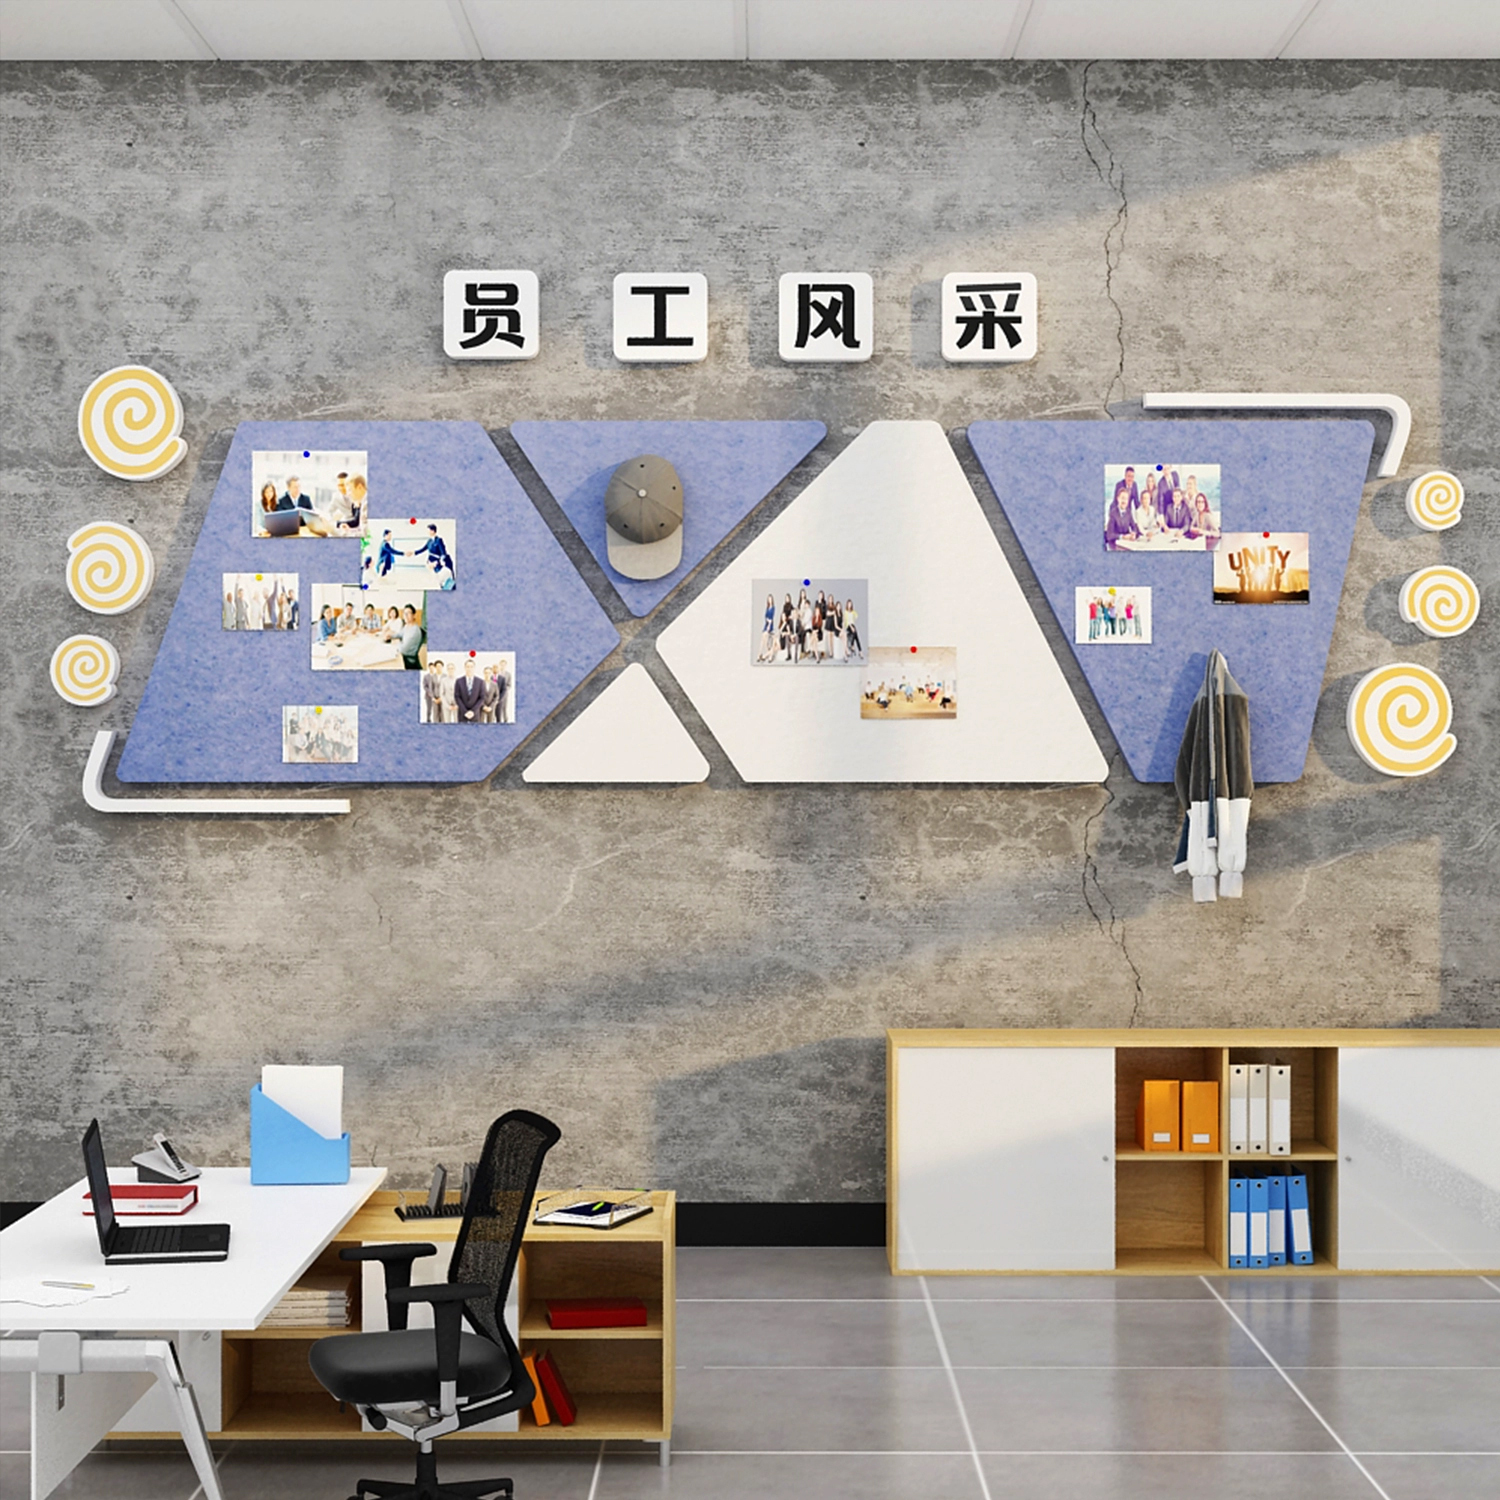 办公室司墙面装饰毛毡贴告栏照片展示板员工风采企业文化氛围布置